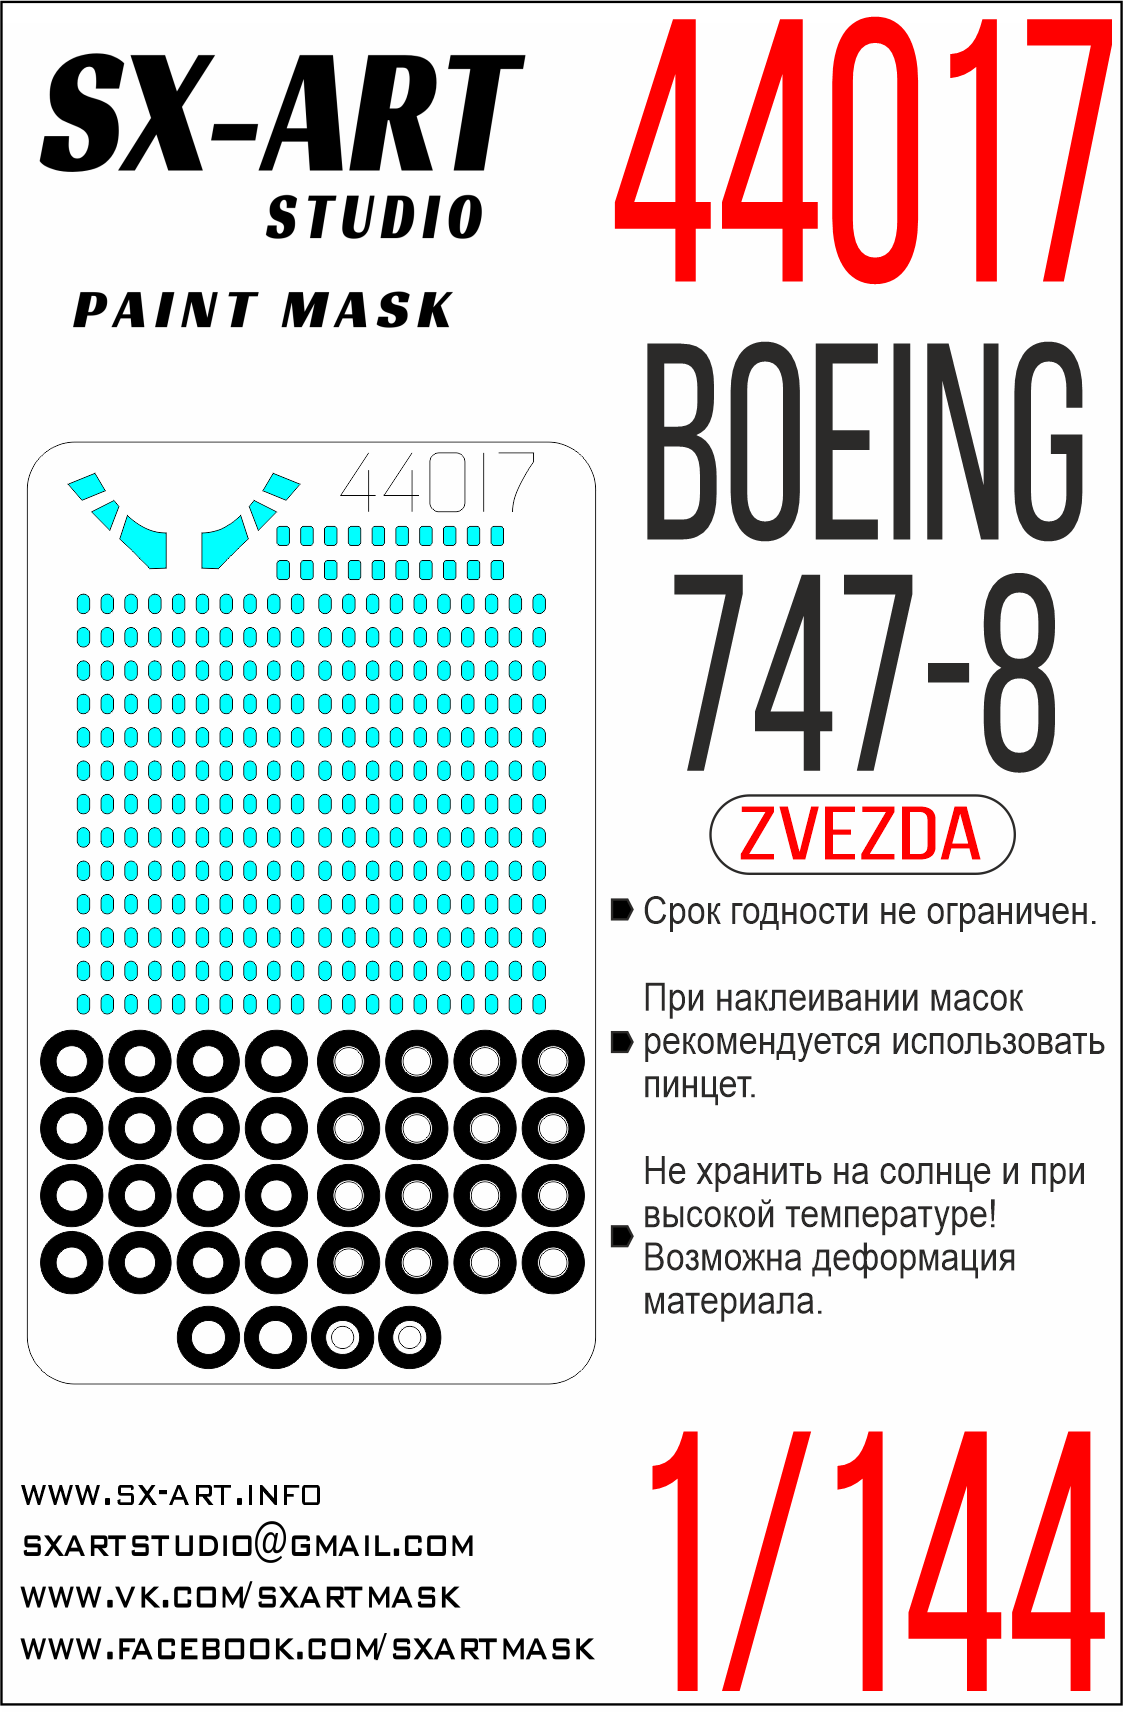 Окрасочная маска 1/144 Boeing 747-8  (Звезда)